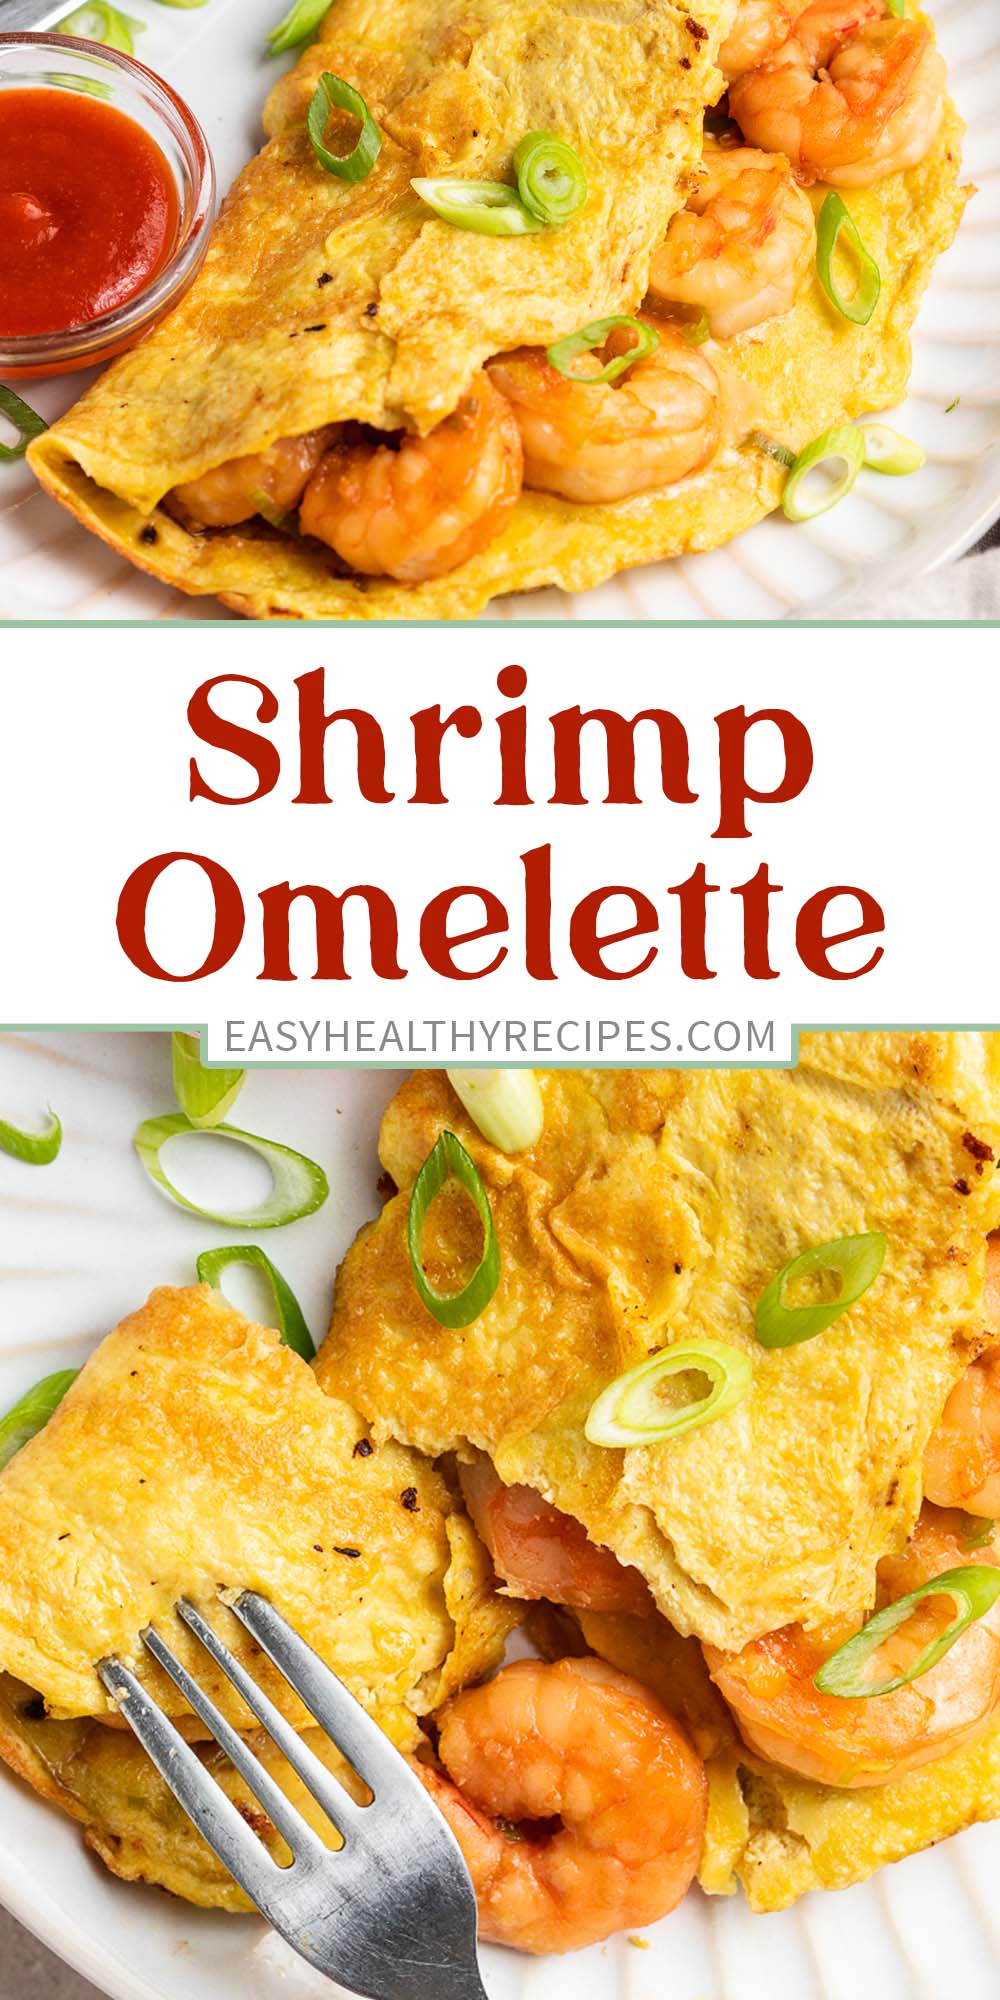 Pin graphic for shrimp omelette.